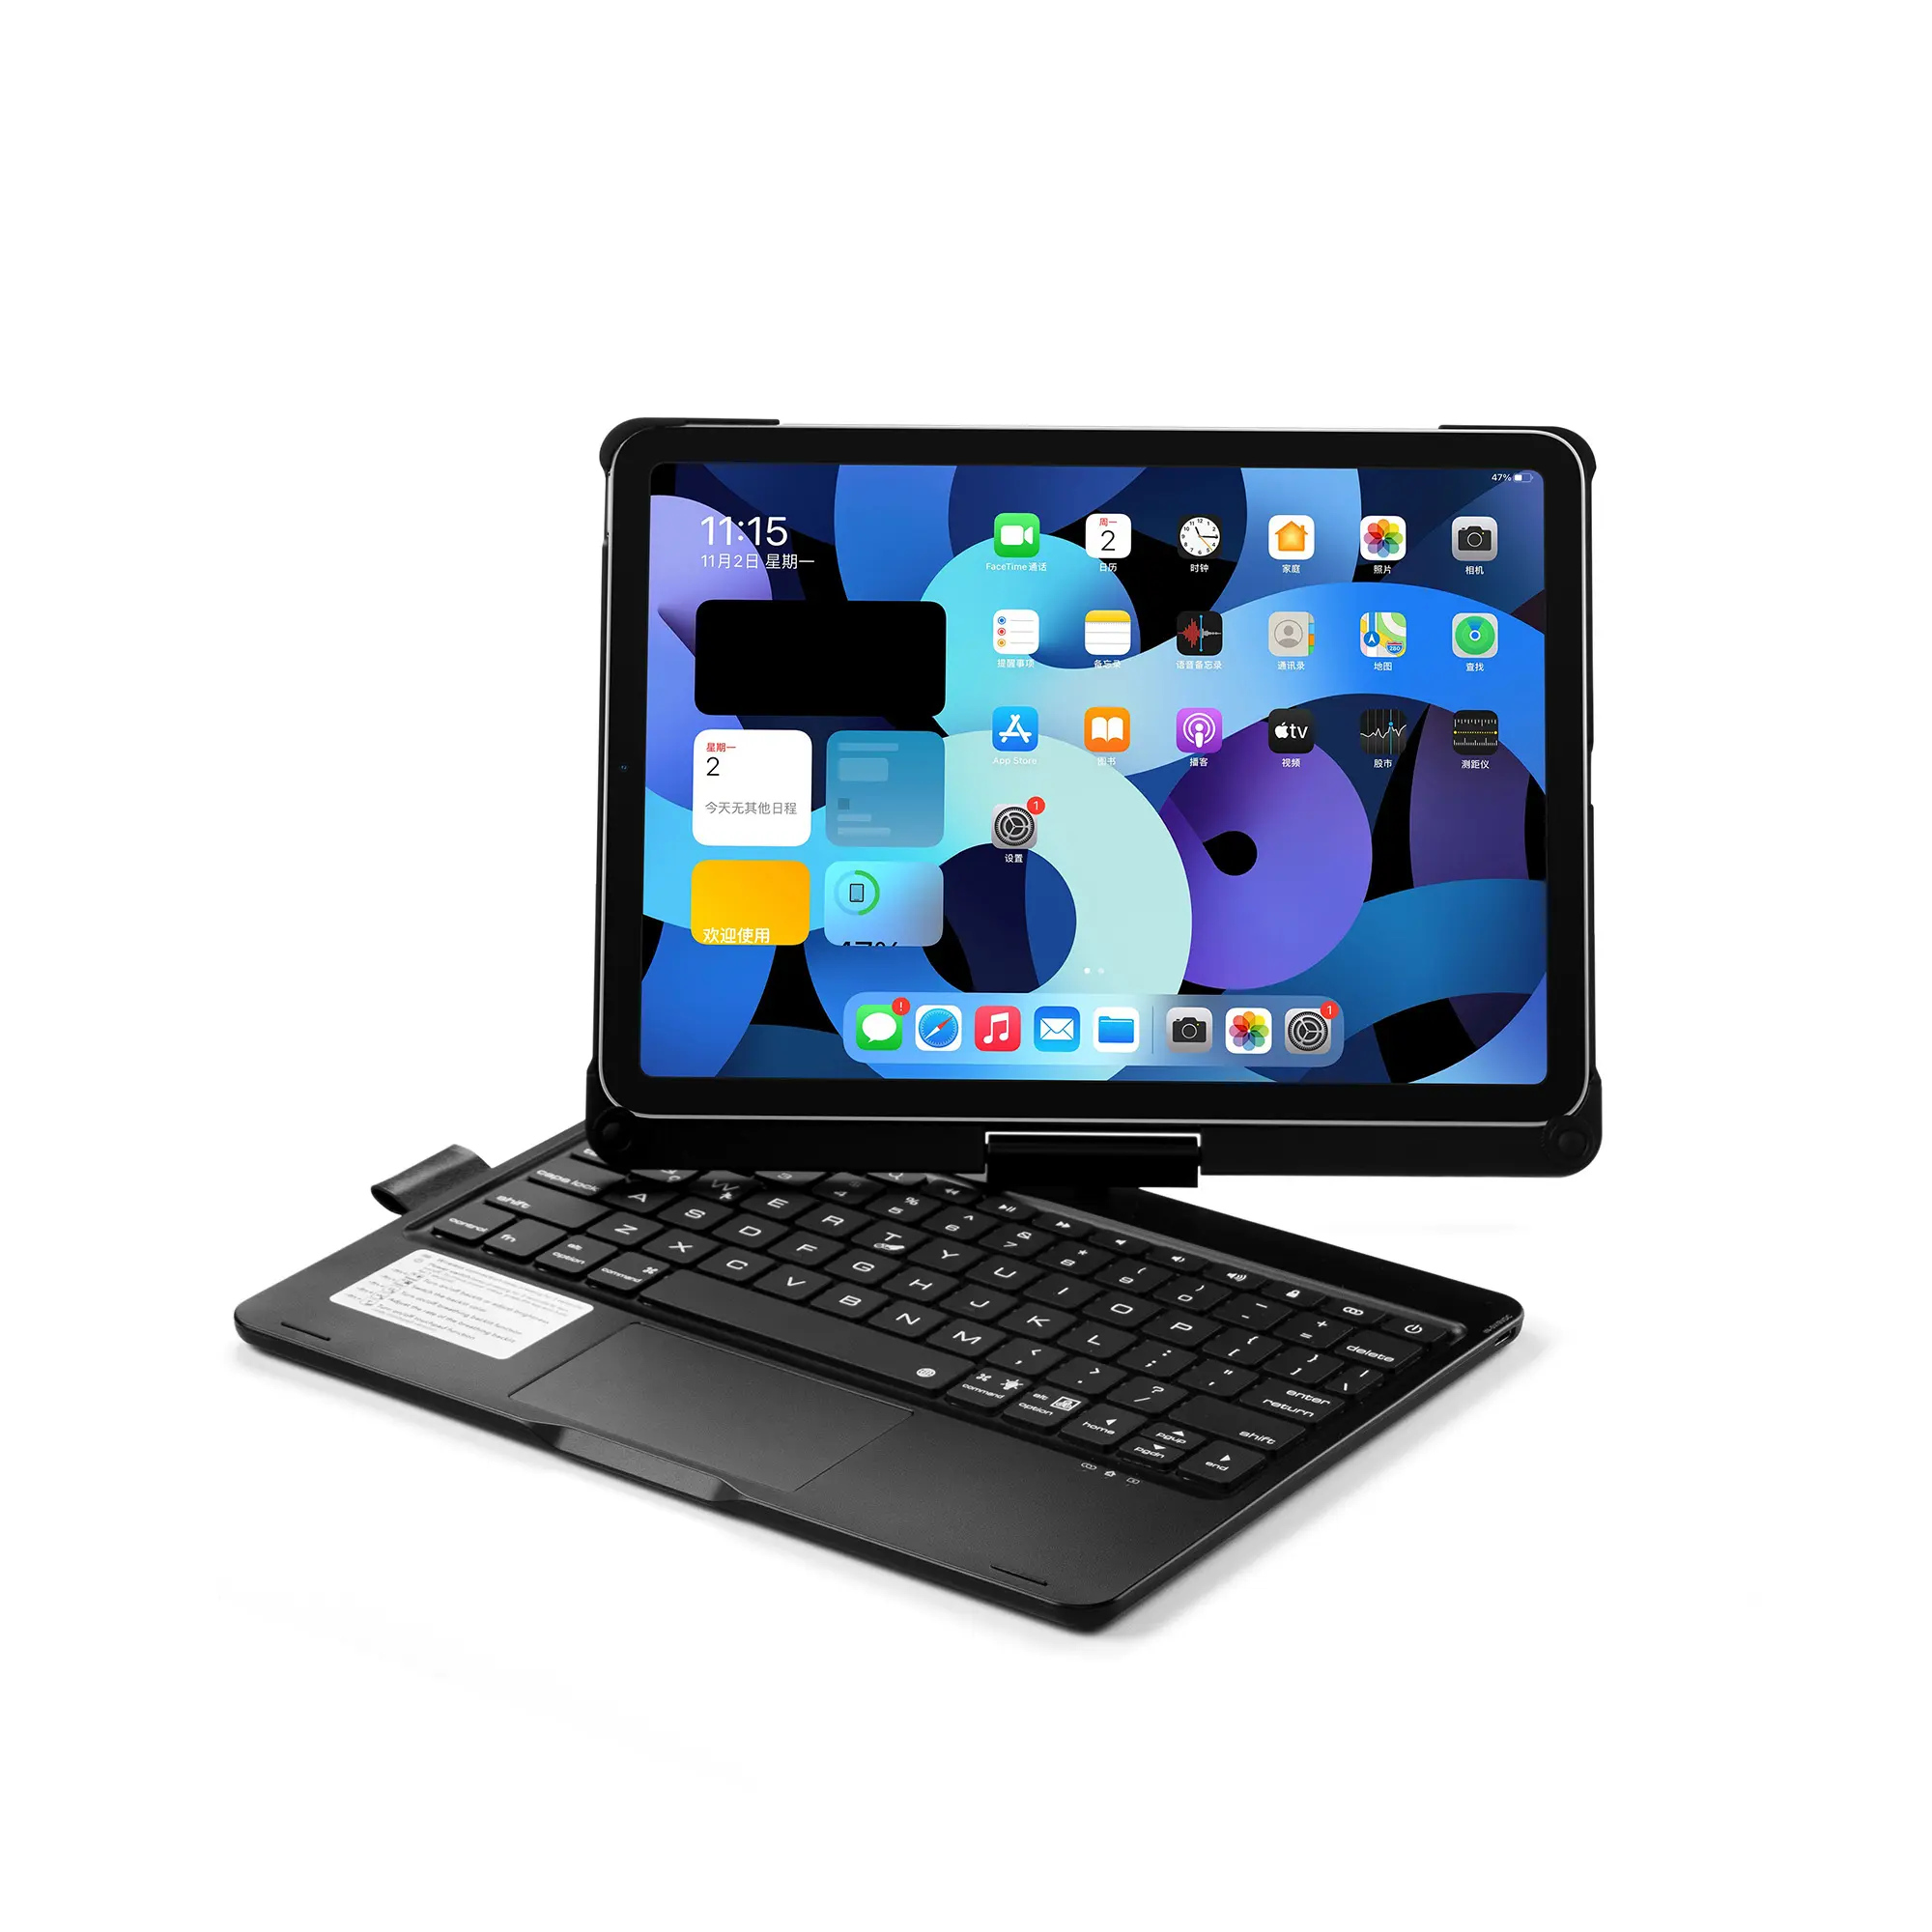 Casing tablet keyboard nirkabel, casing IPad Air4 10.9 dengan lampu latar warna-warni dan fitur versi sentuh